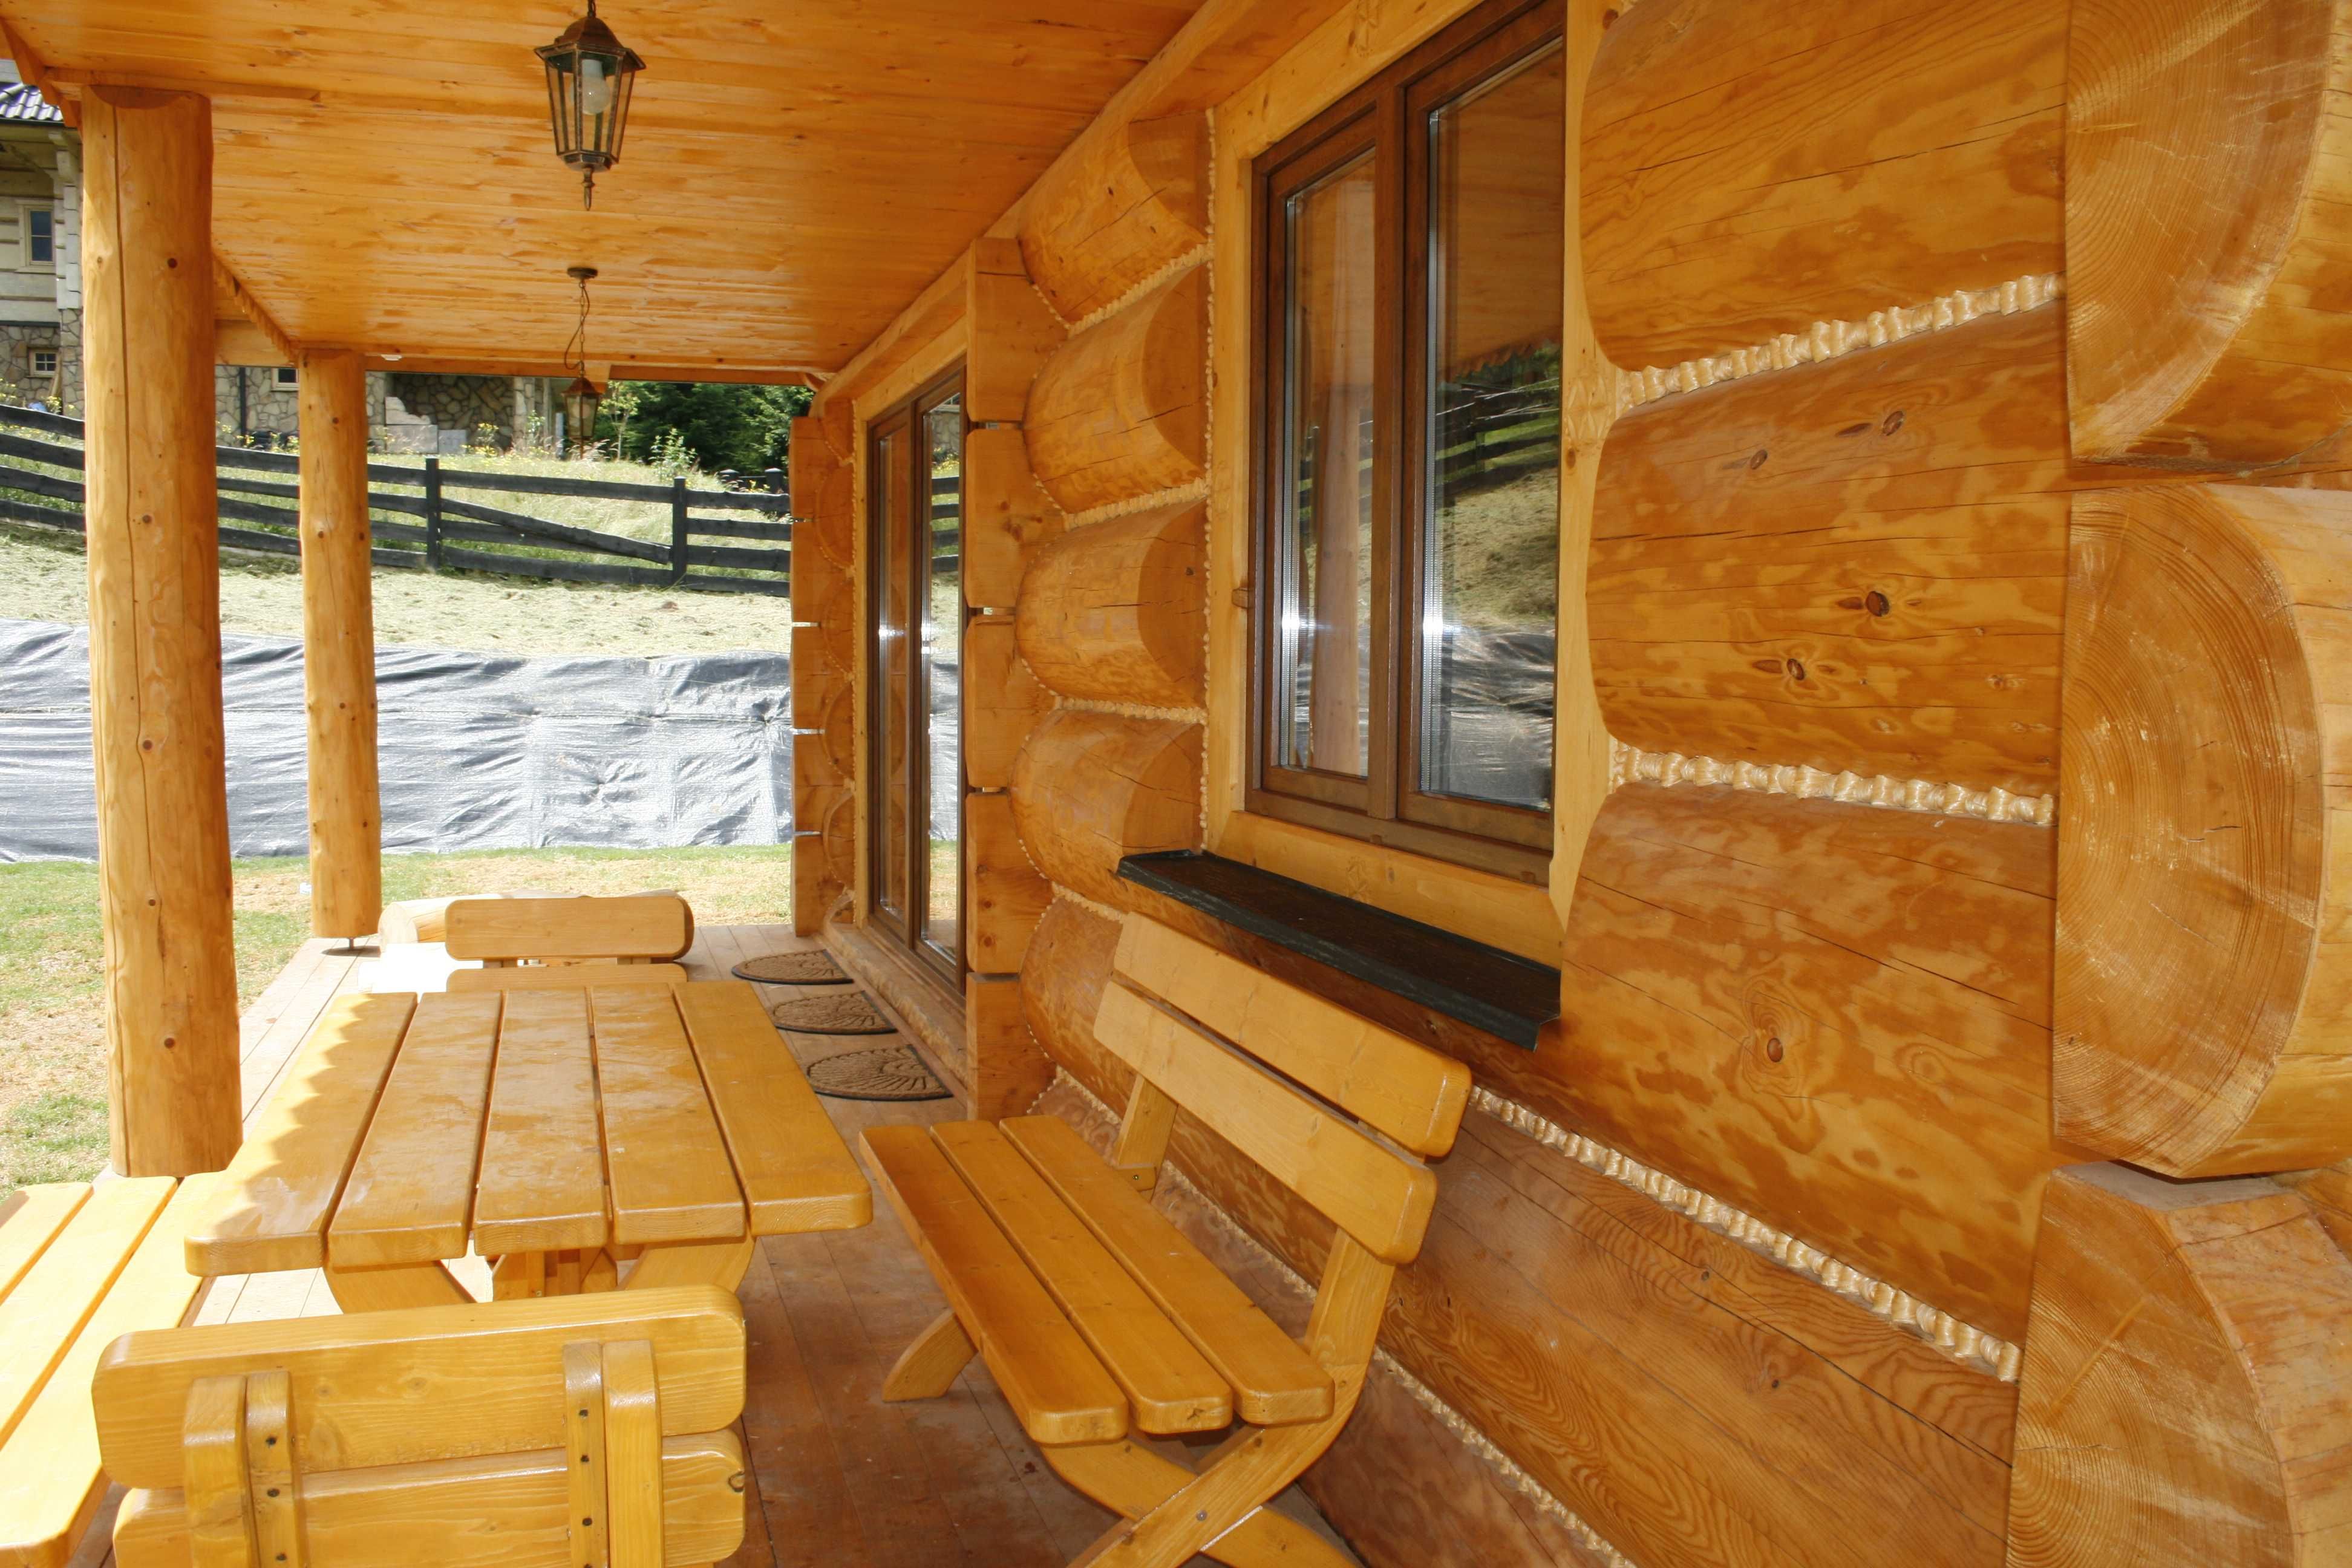 Dom w górach na wynajem Pieniny  Gorce  Szczawnica, 14 osób, sauna